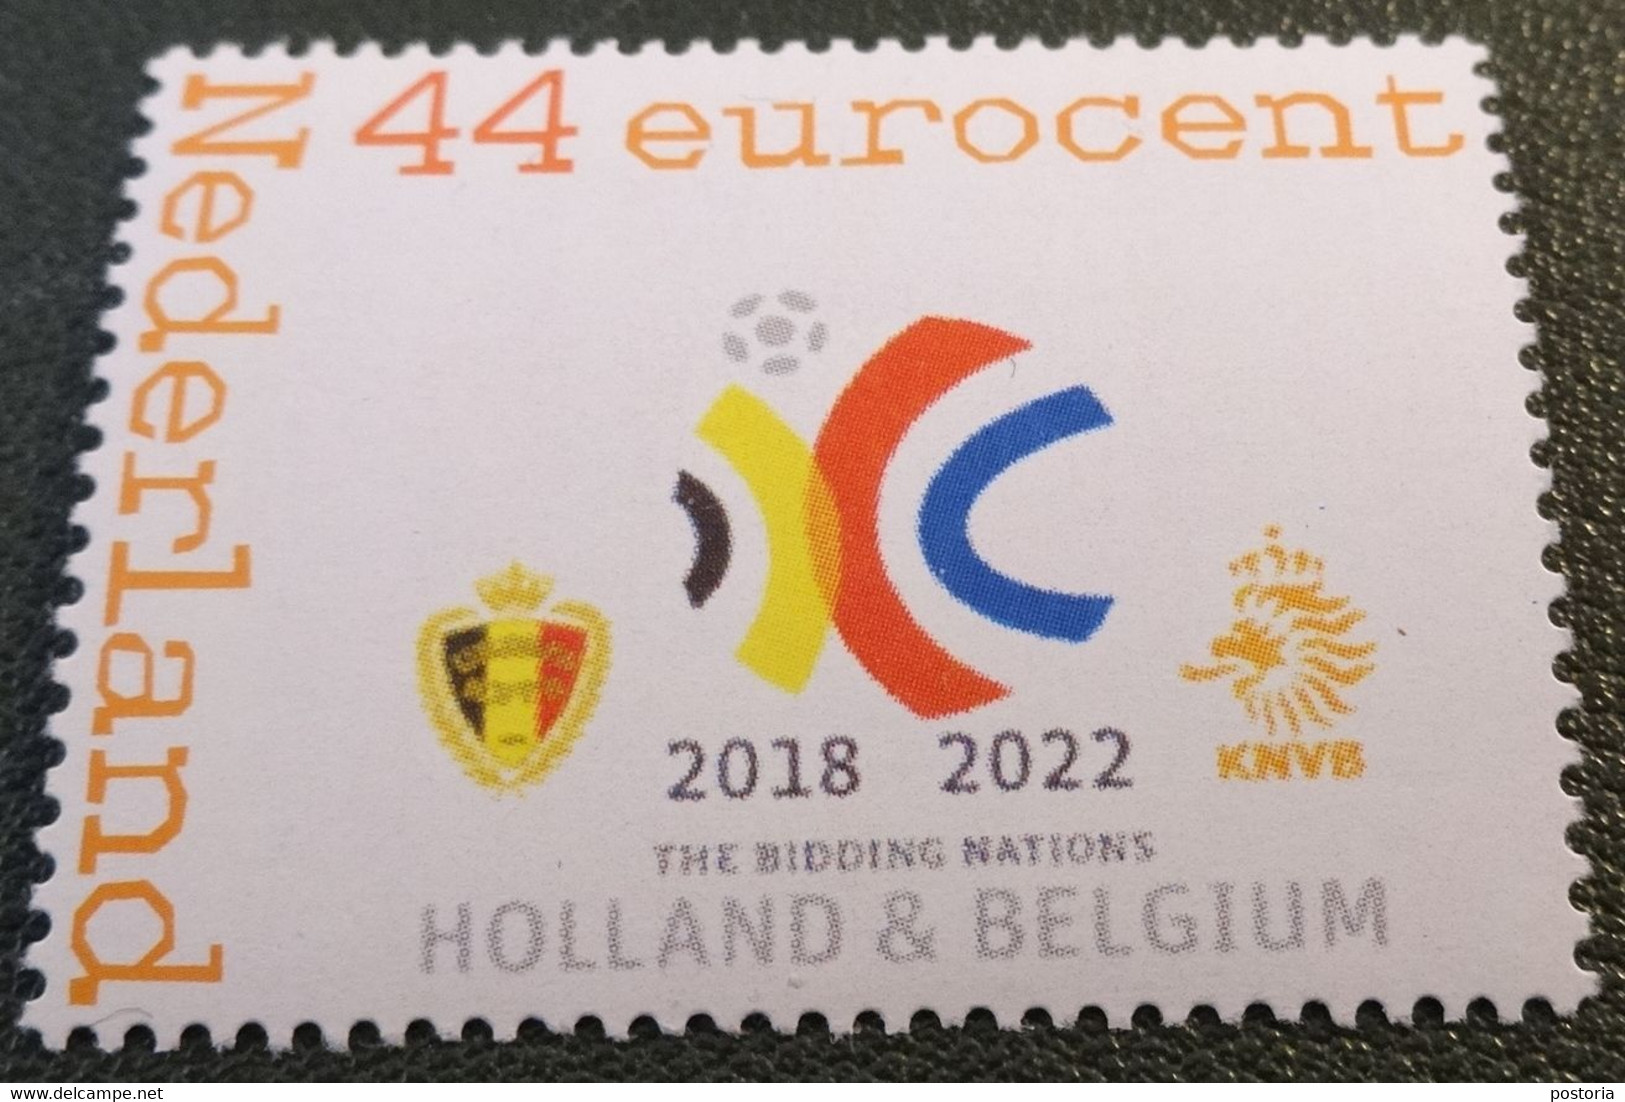 Nederland - NVPH - Persoonlijk Postfris - Voetbal - Bidding Nations Holland Belgium - Persoonlijke Postzegels